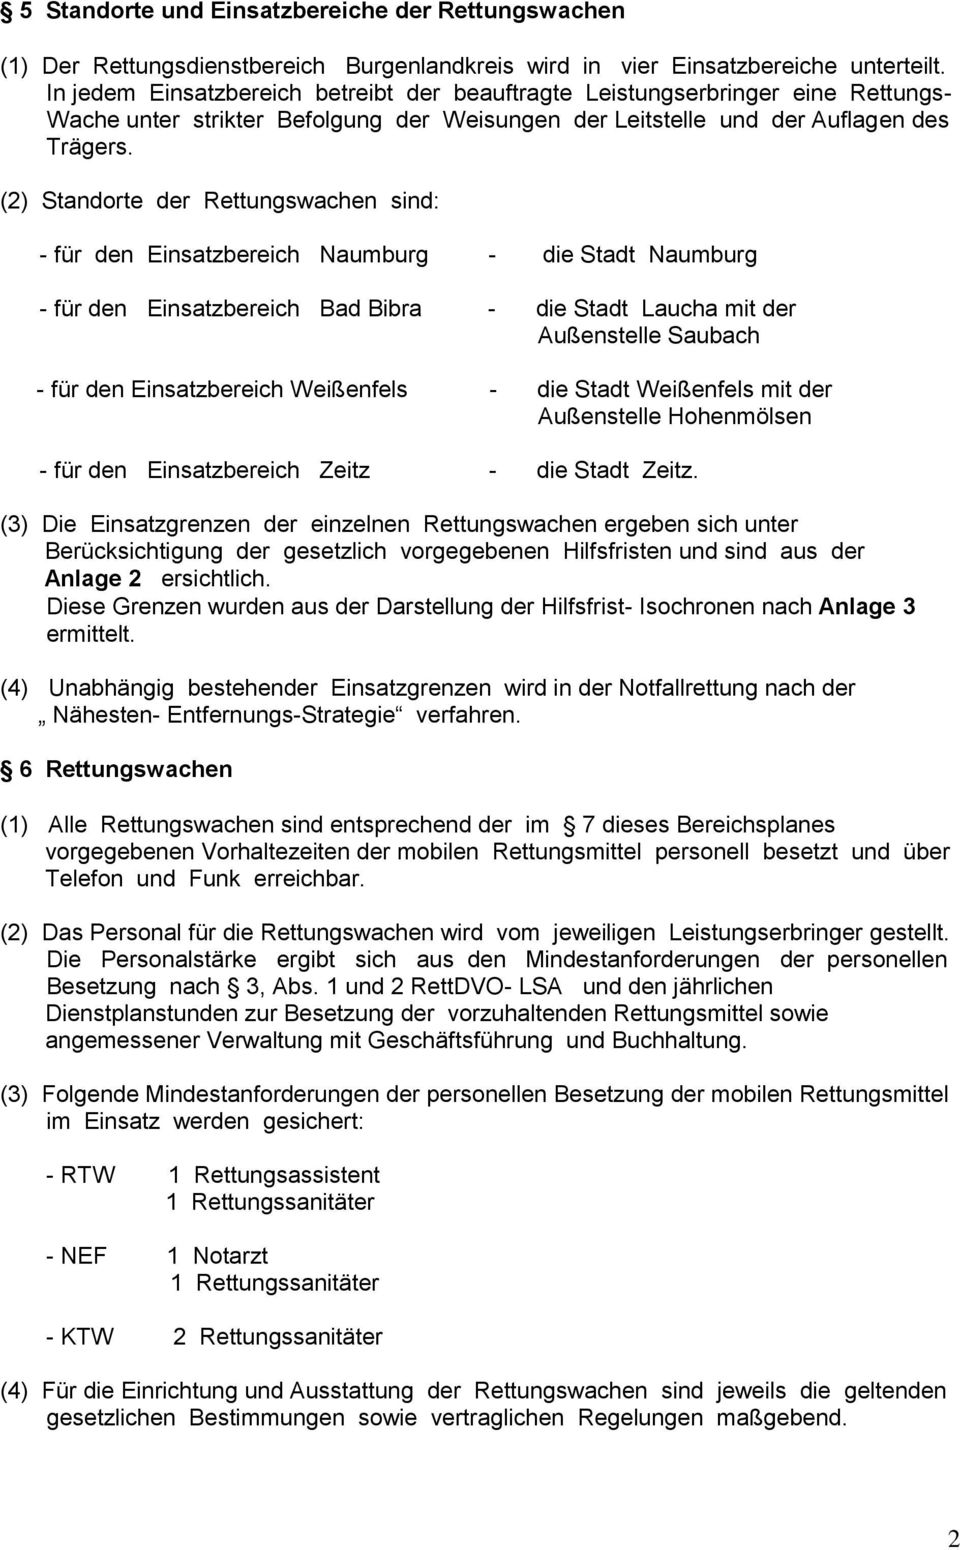 (2) Standorte der Rettungswachen sind: - für den Einsatzbereich Naumburg - die Stadt Naumburg - für den Einsatzbereich Bad Bibra - die Stadt Laucha mit der Außenstelle Saubach - für den